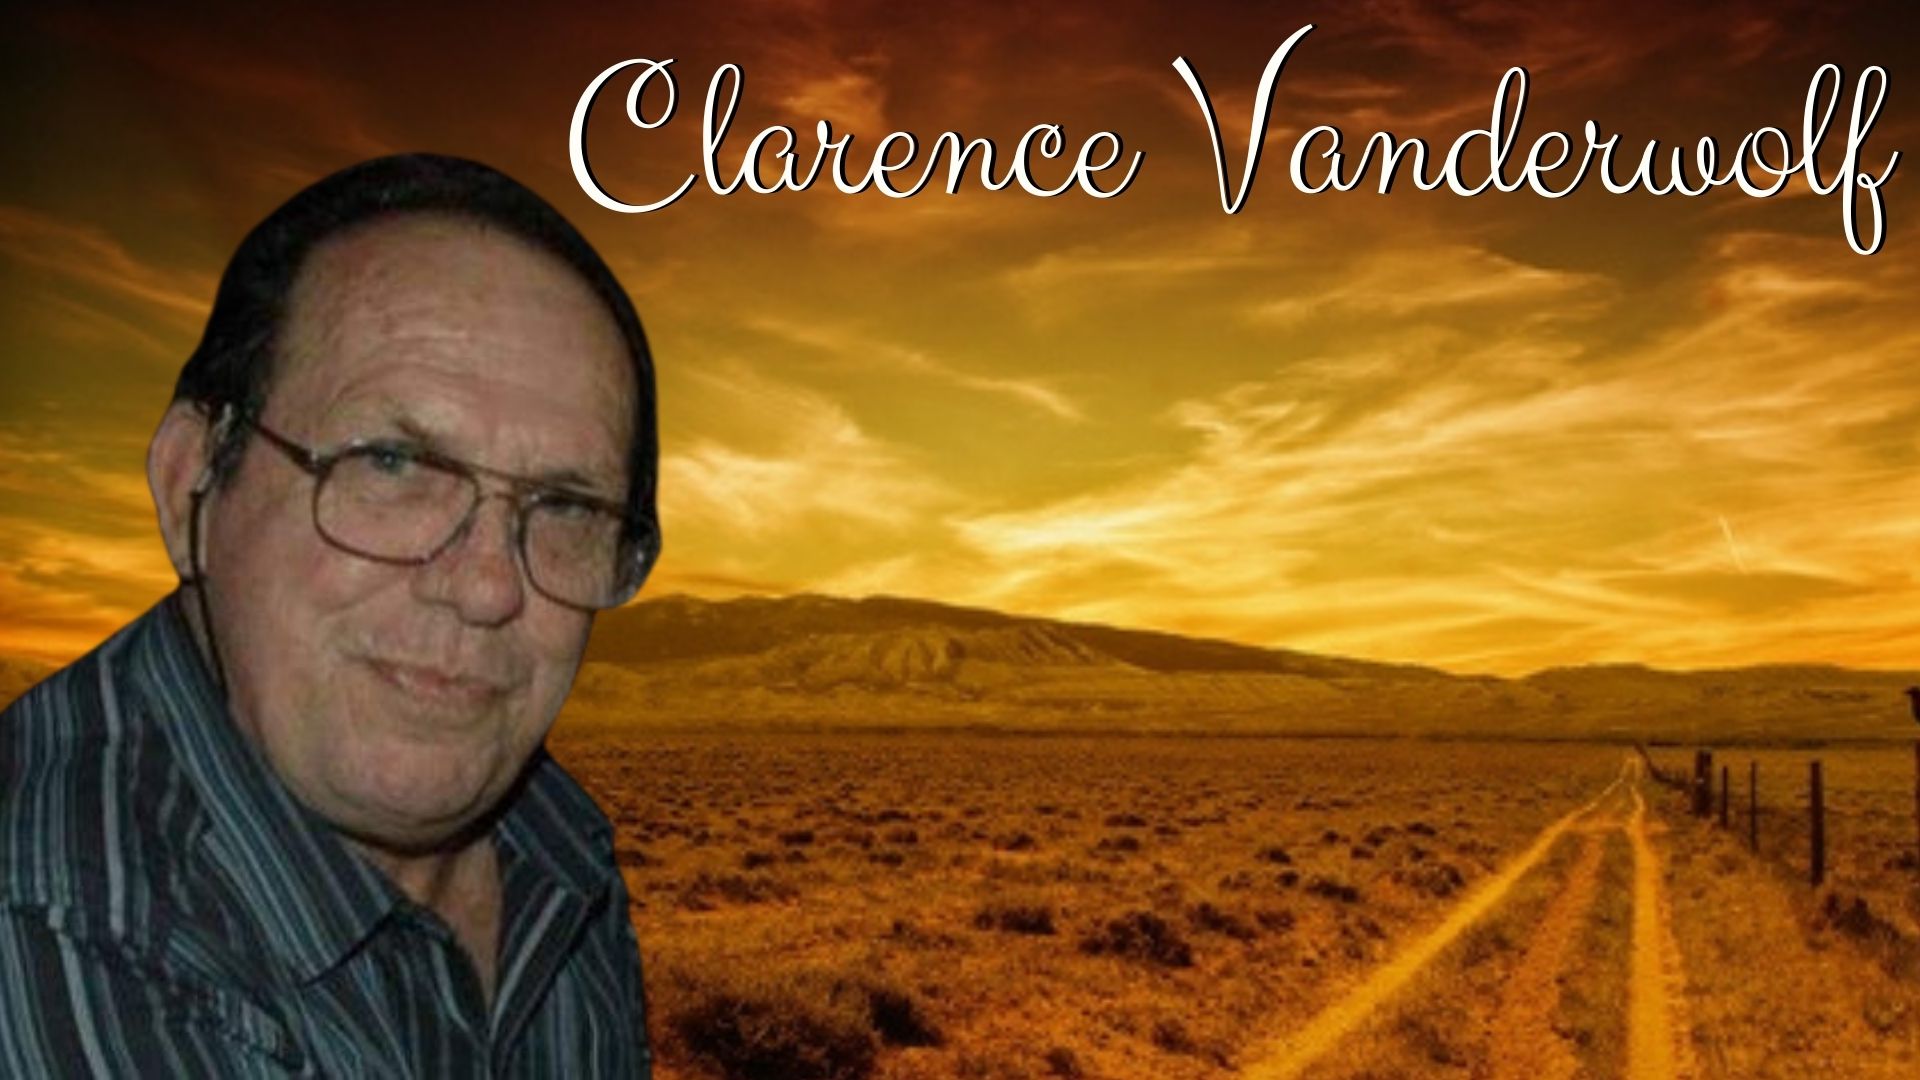 Clarence Vanderwolf